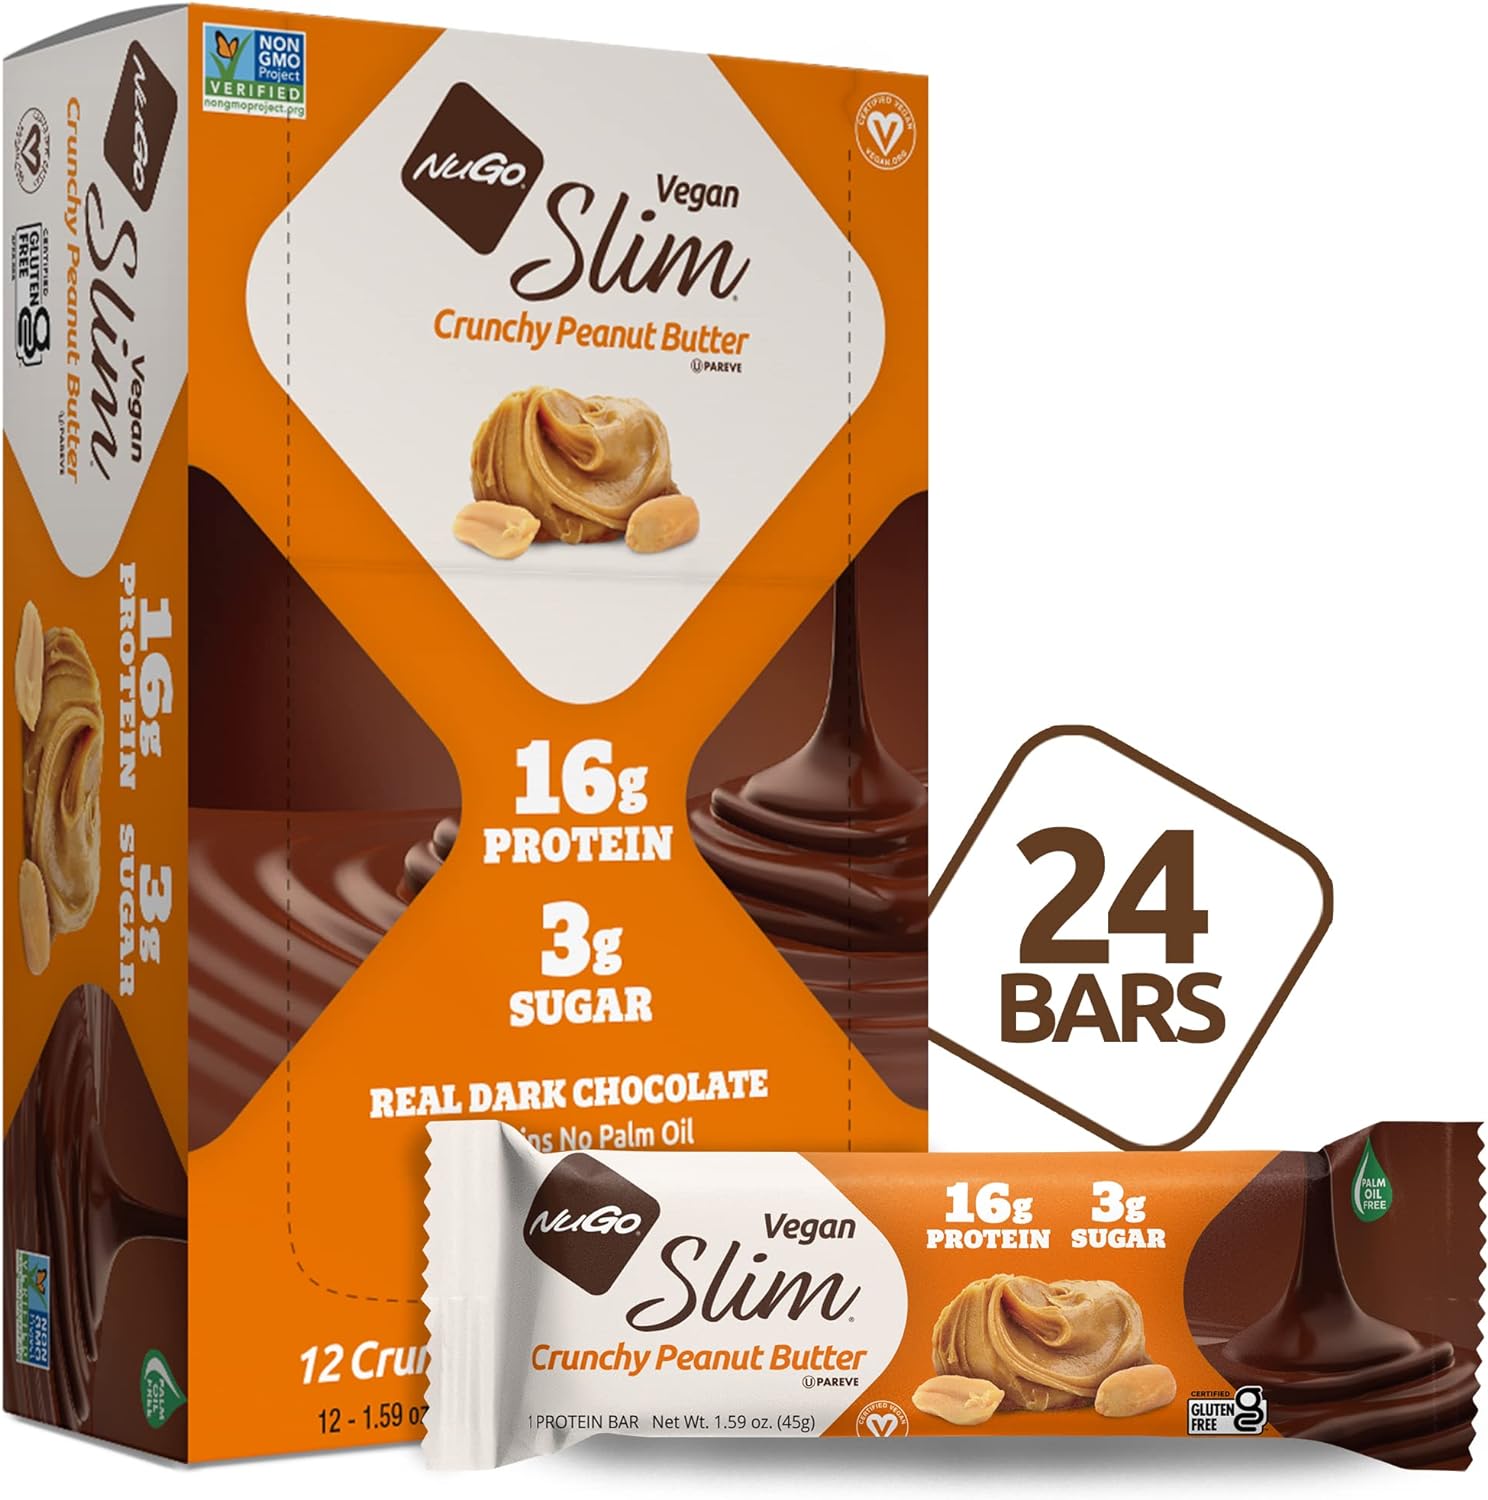 Nugo Slim Dark Chocolate Crunchy Peanut Butter, 16g Vegan Protein, 3g 2.65 Pounds